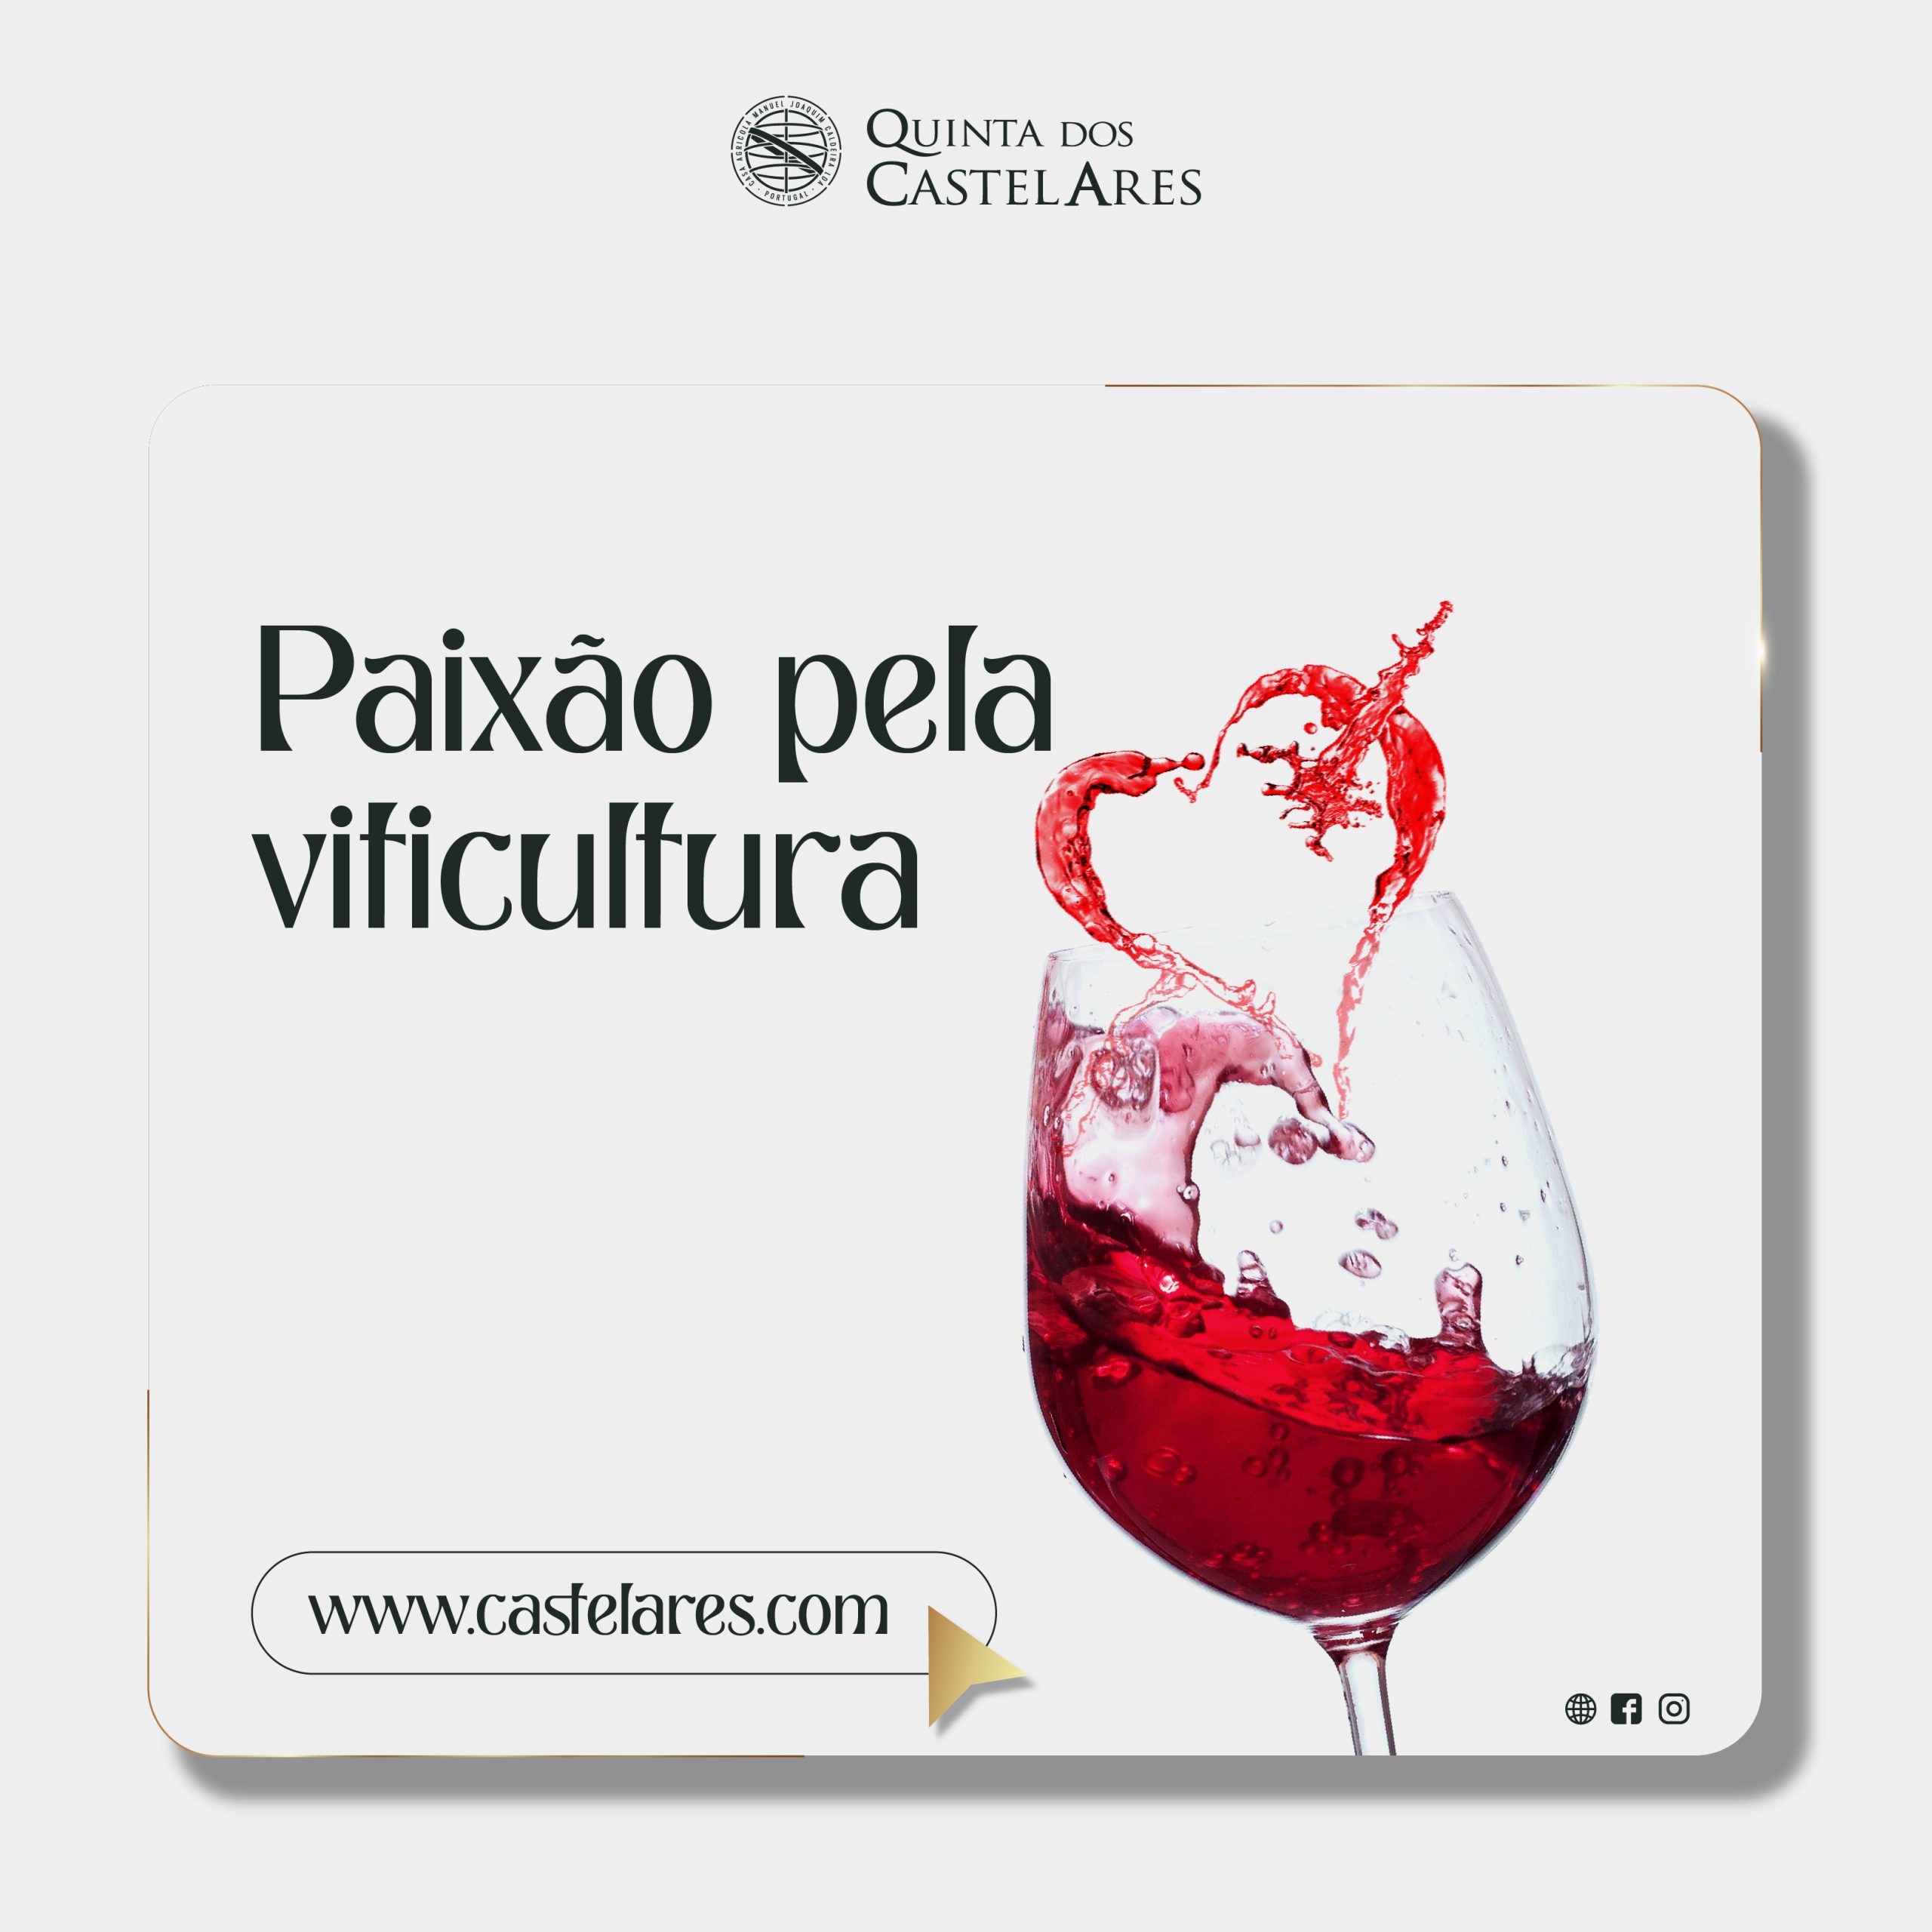 Paixão pela viticultura